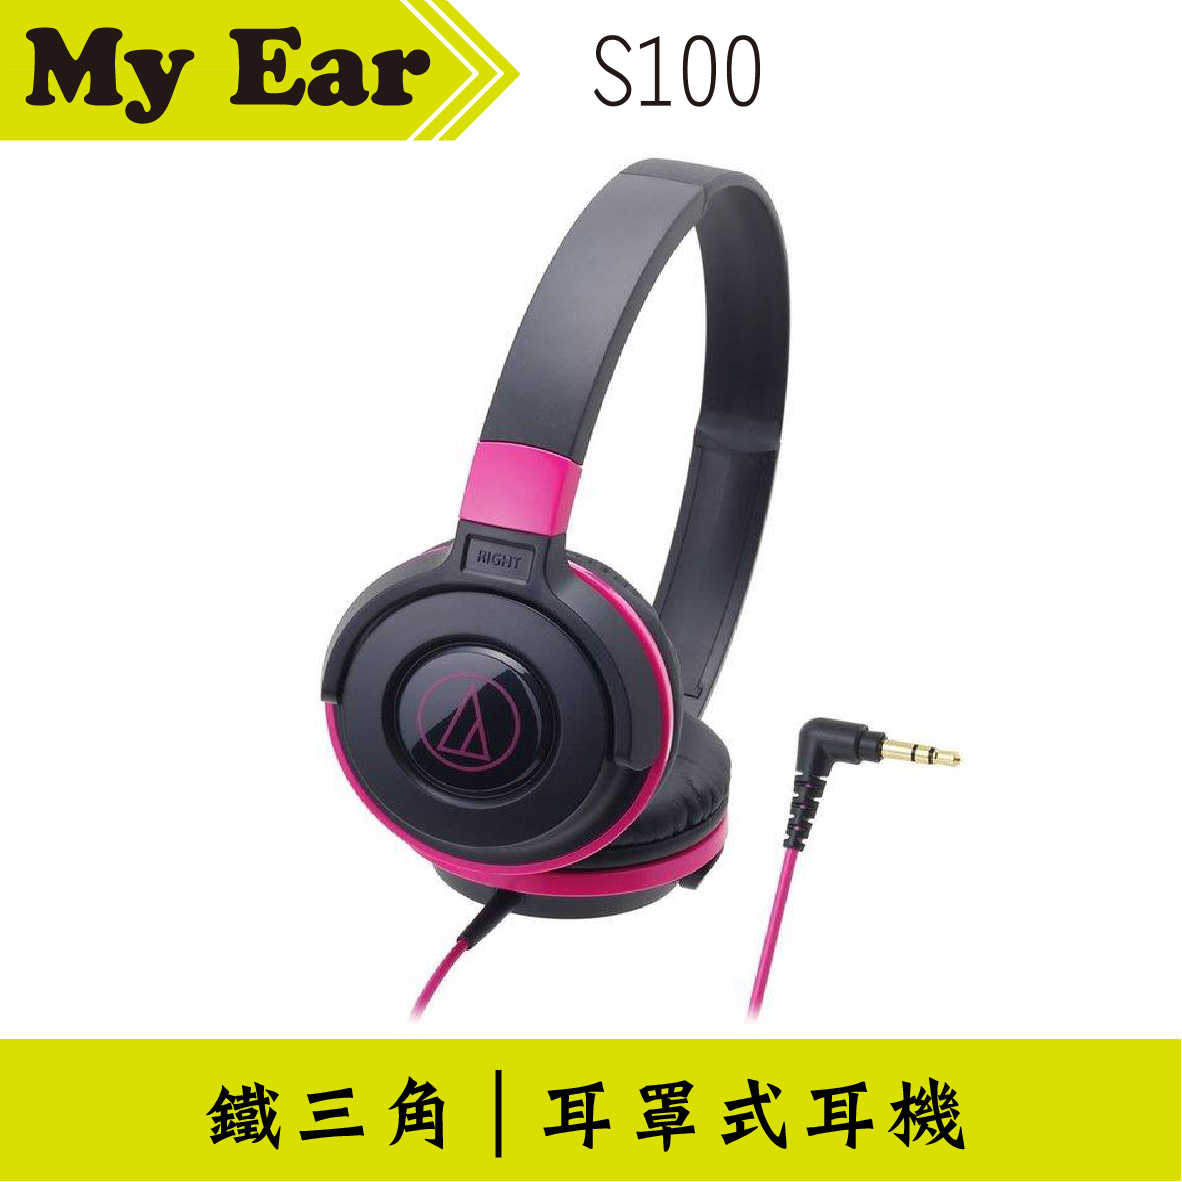 鐵三角 ATH-S100 耳罩式耳機 黑粉色 | My Ear 耳機專門店